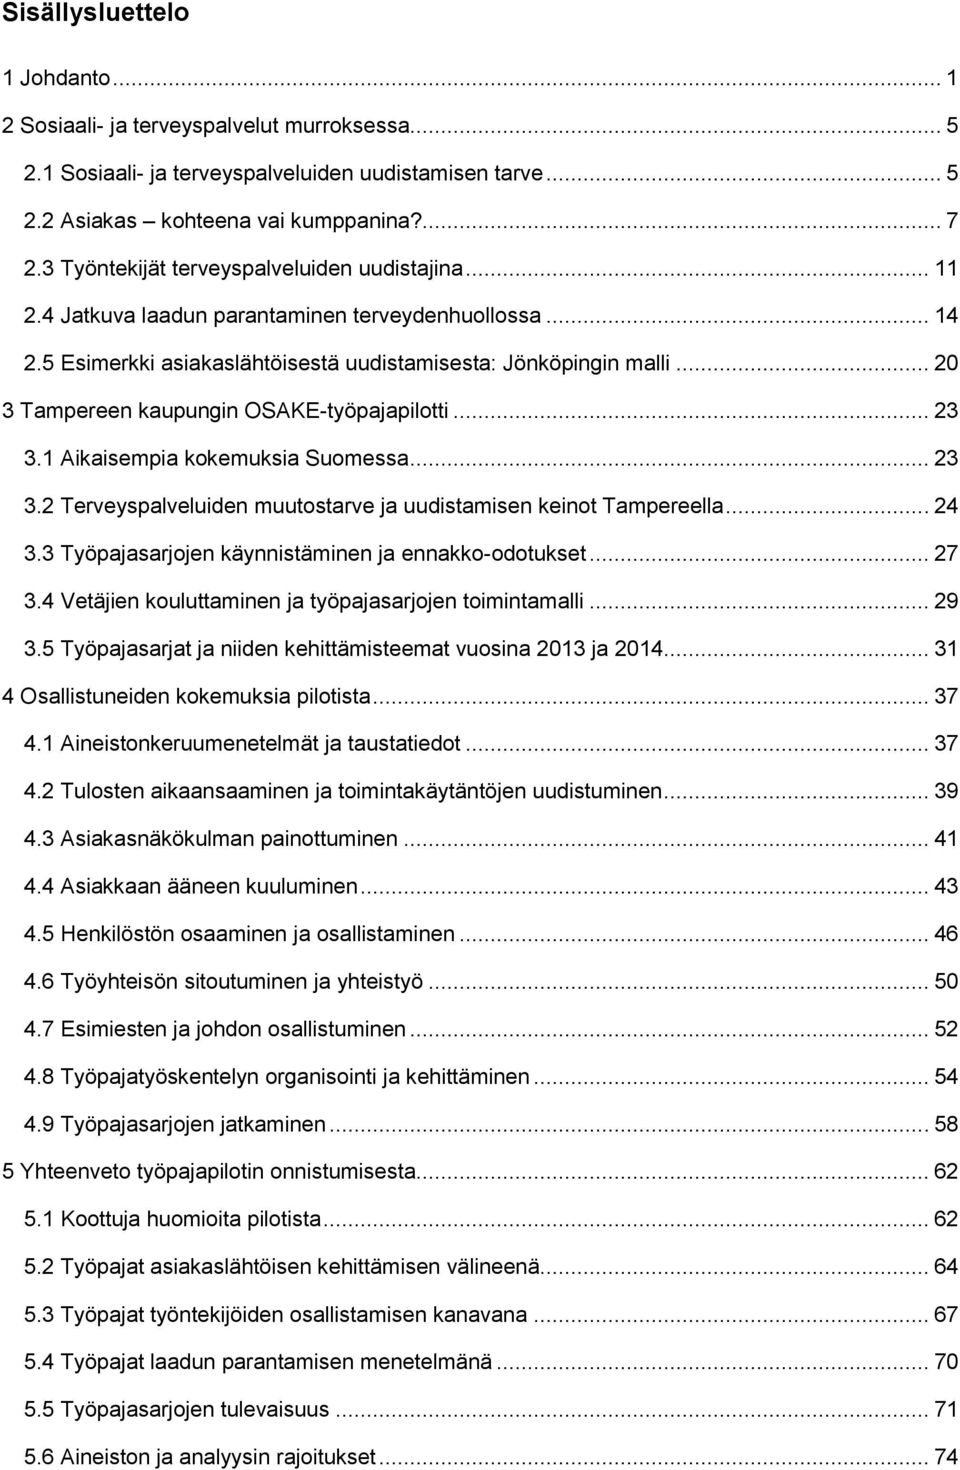 .. 20 3 Tampereen kaupungin OSAKE-työpajapilotti... 23 3.1 Aikaisempia kokemuksia Suomessa... 23 3.2 Terveyspalveluiden muutostarve ja uudistamisen keinot Tampereella... 24 3.